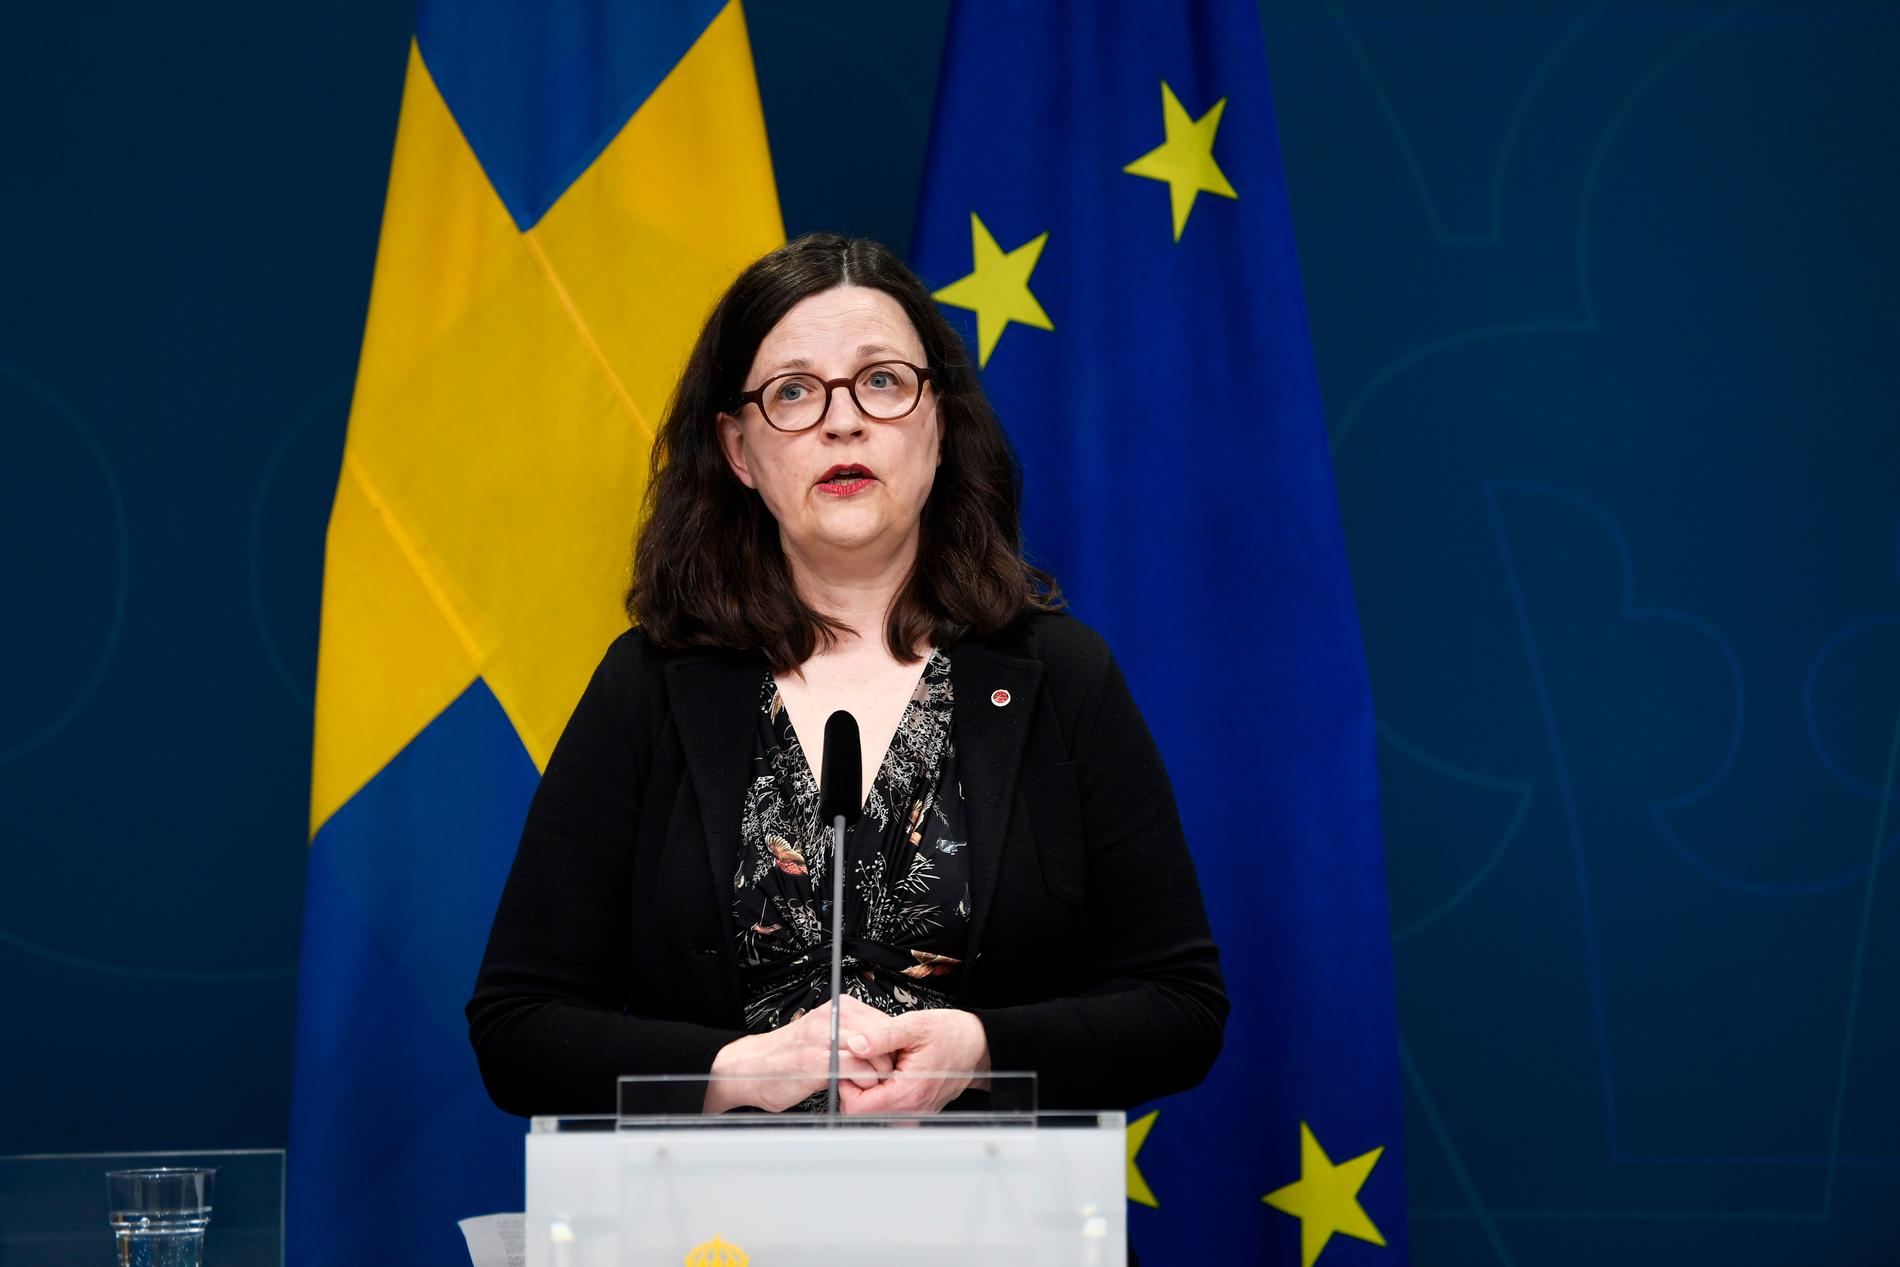 Enligt utbildningsminister Anna Ekström skulle ett beslut om att stänga alla skolor ”kosta mer än det skulle ge”.